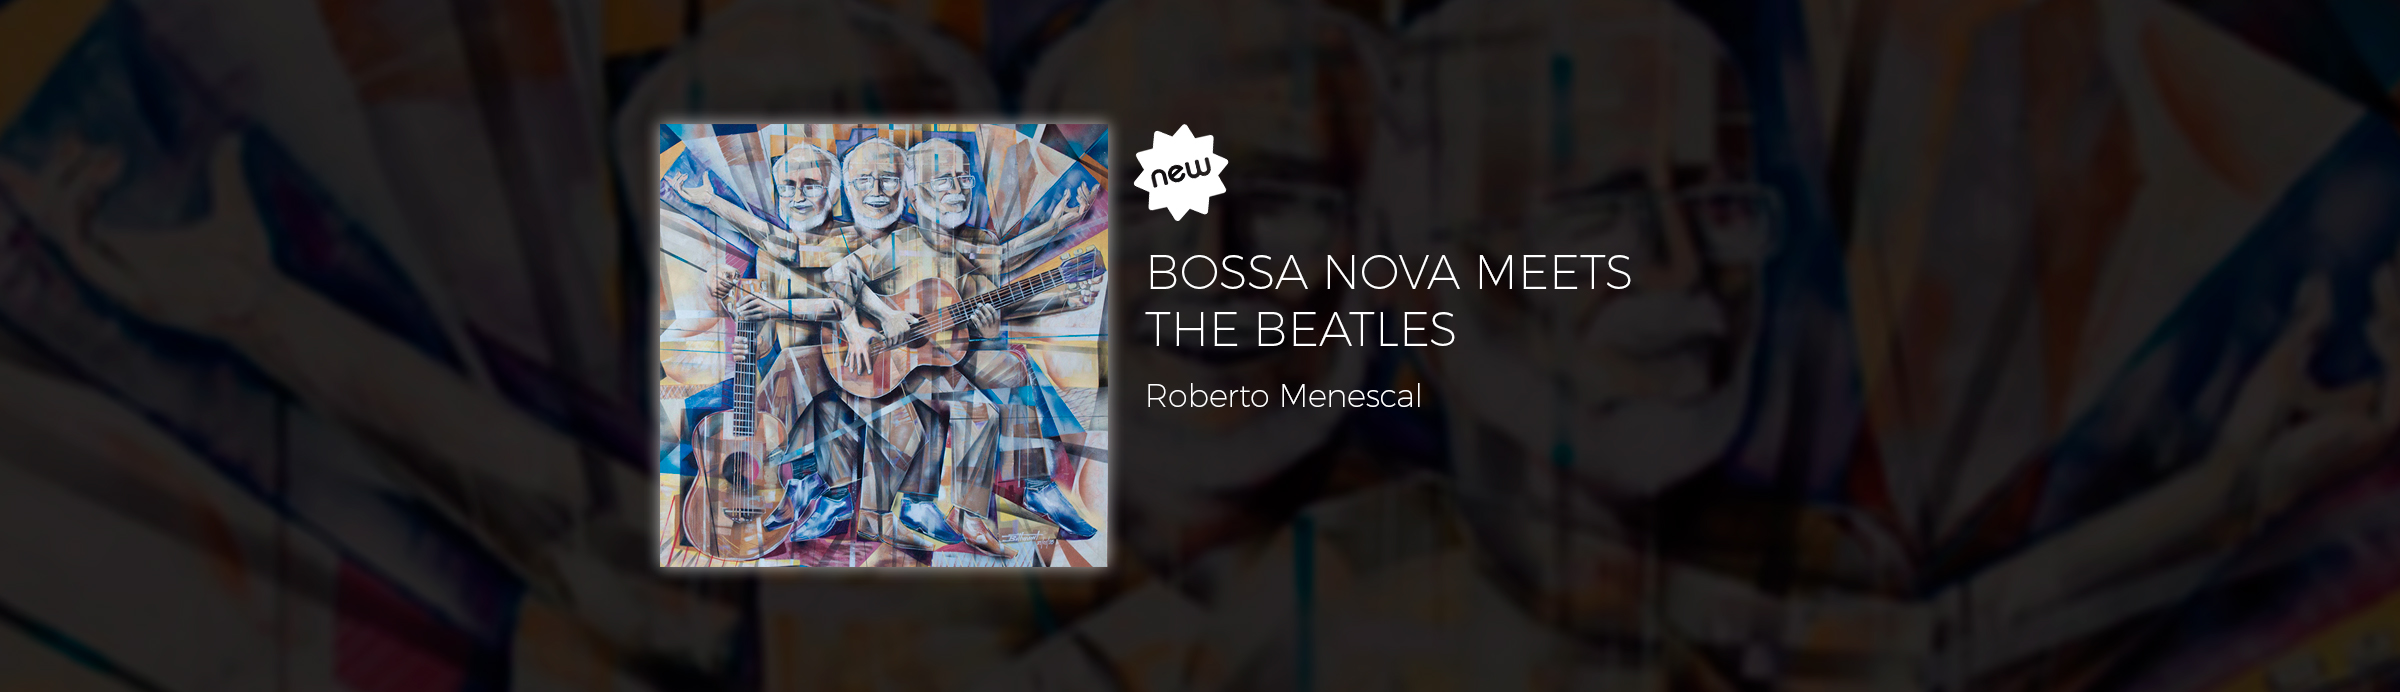 Menescal cruza a fronteira pop/rock em “Bossanova meet The Beatles”